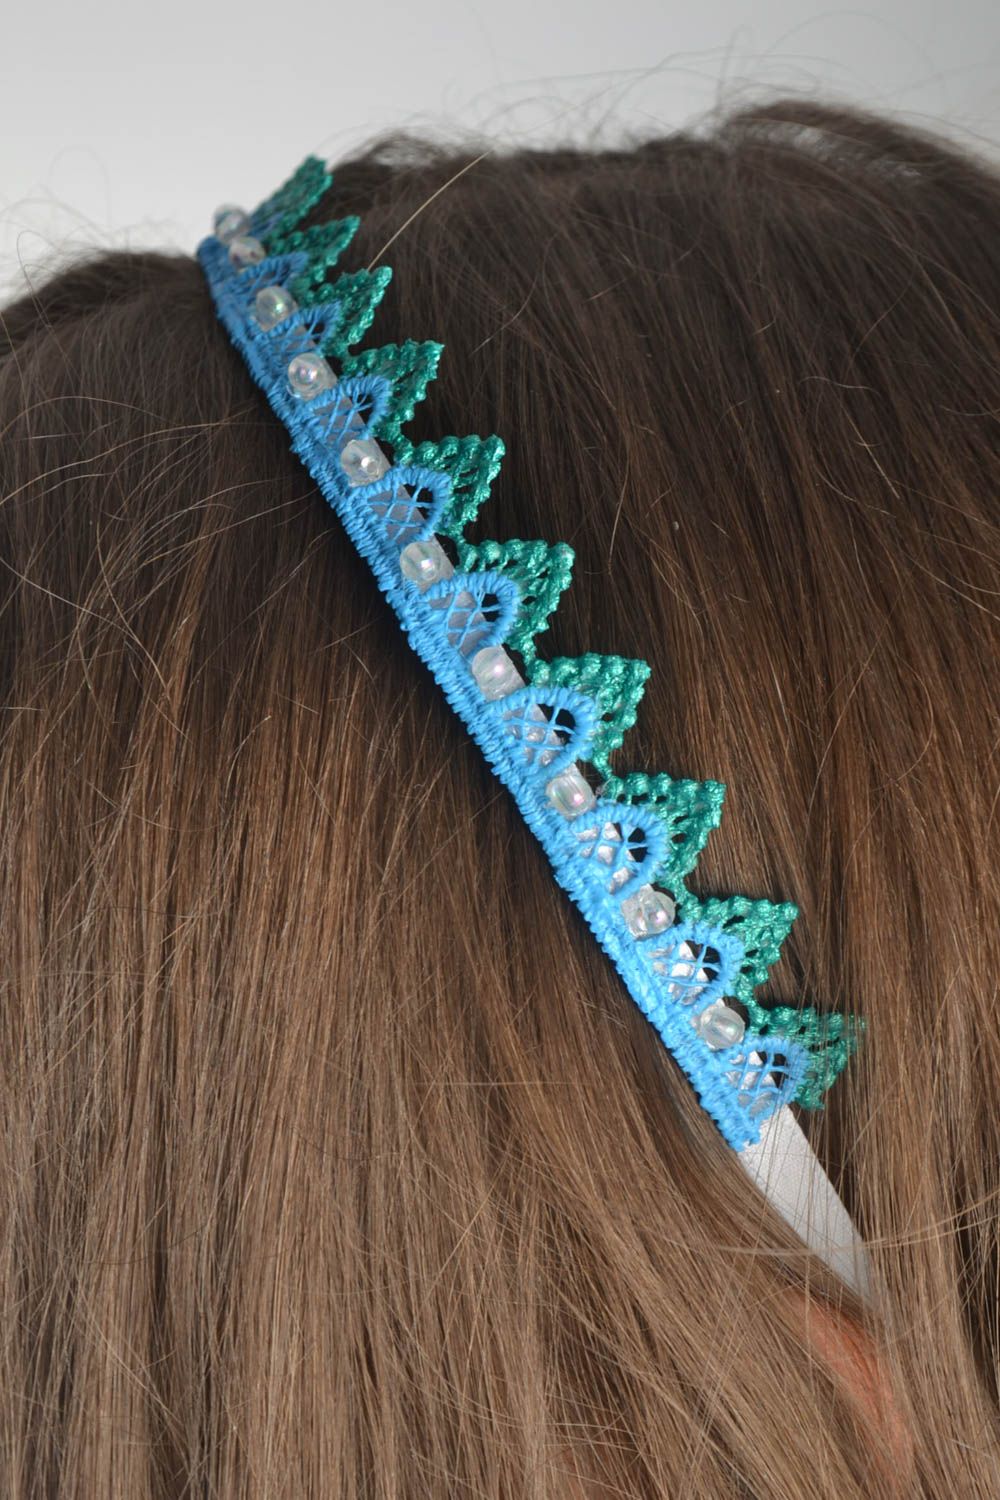 Аксессуар для волос ручной работы обруч на голову украшение на голову голубое фото 1